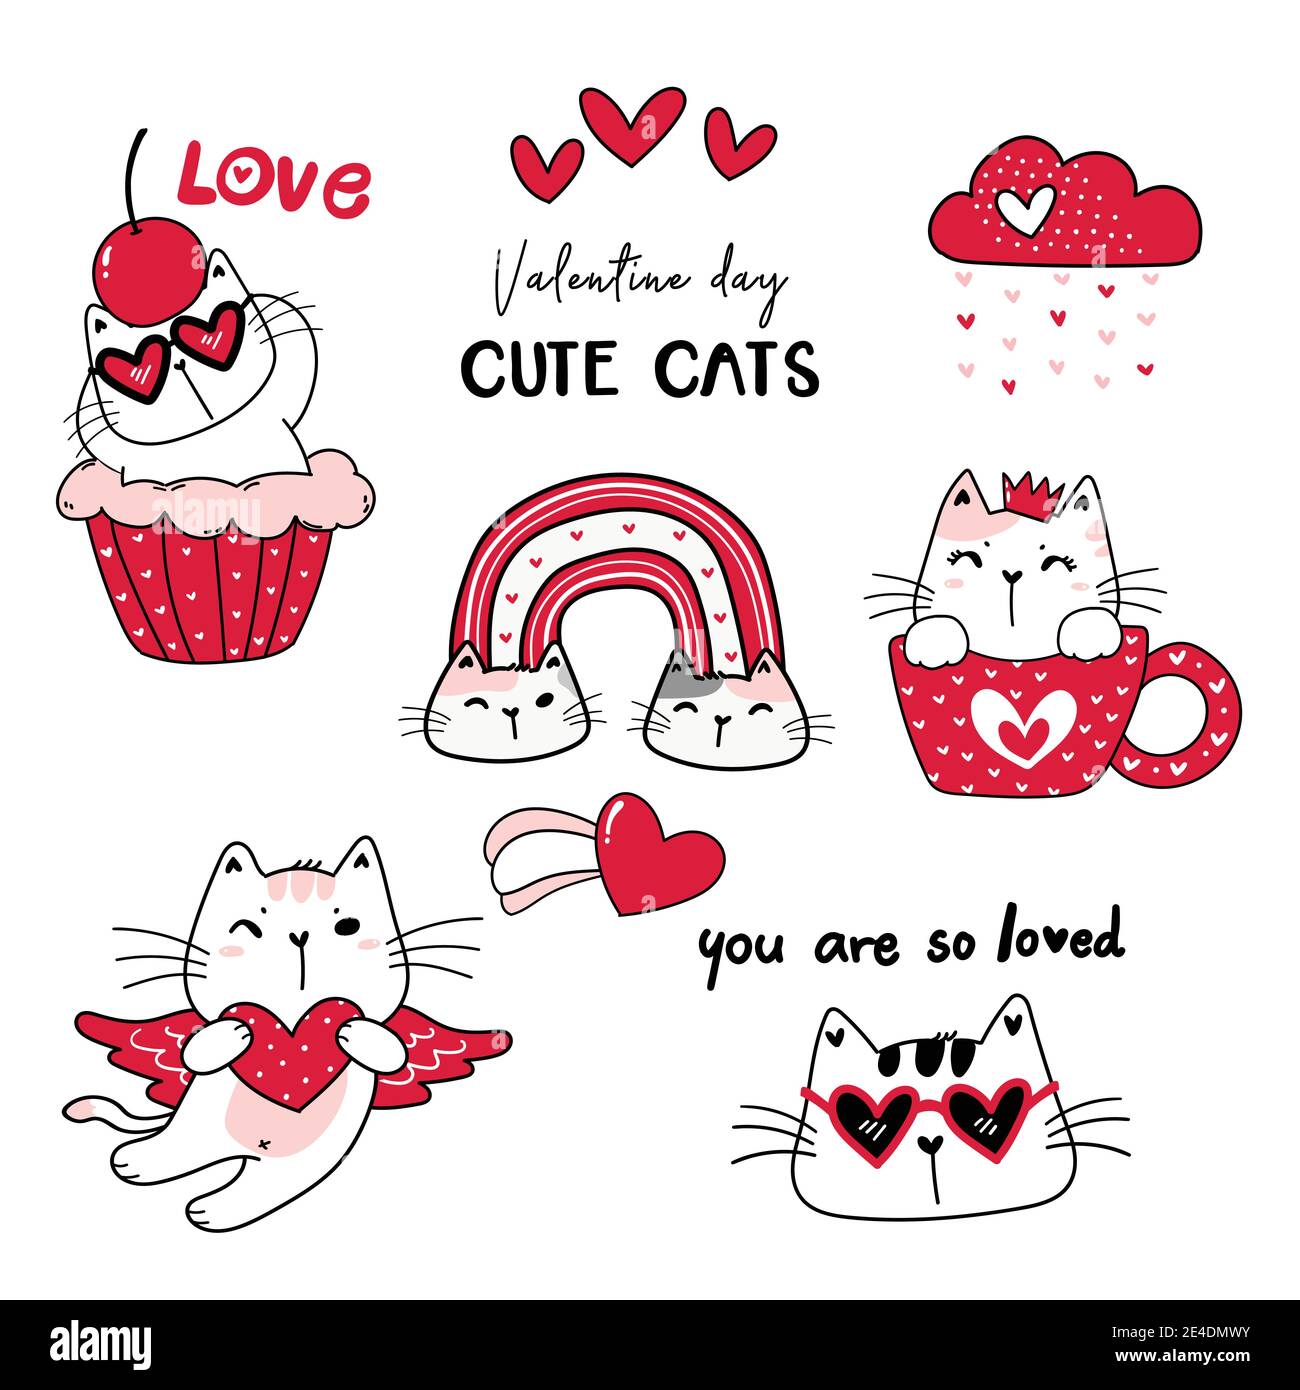 Adorable chat rouge Saint-Valentin caricature collection de vecteur, valentine clipart ensemble, dessin de chat doodle en rouge Illustration de Vecteur